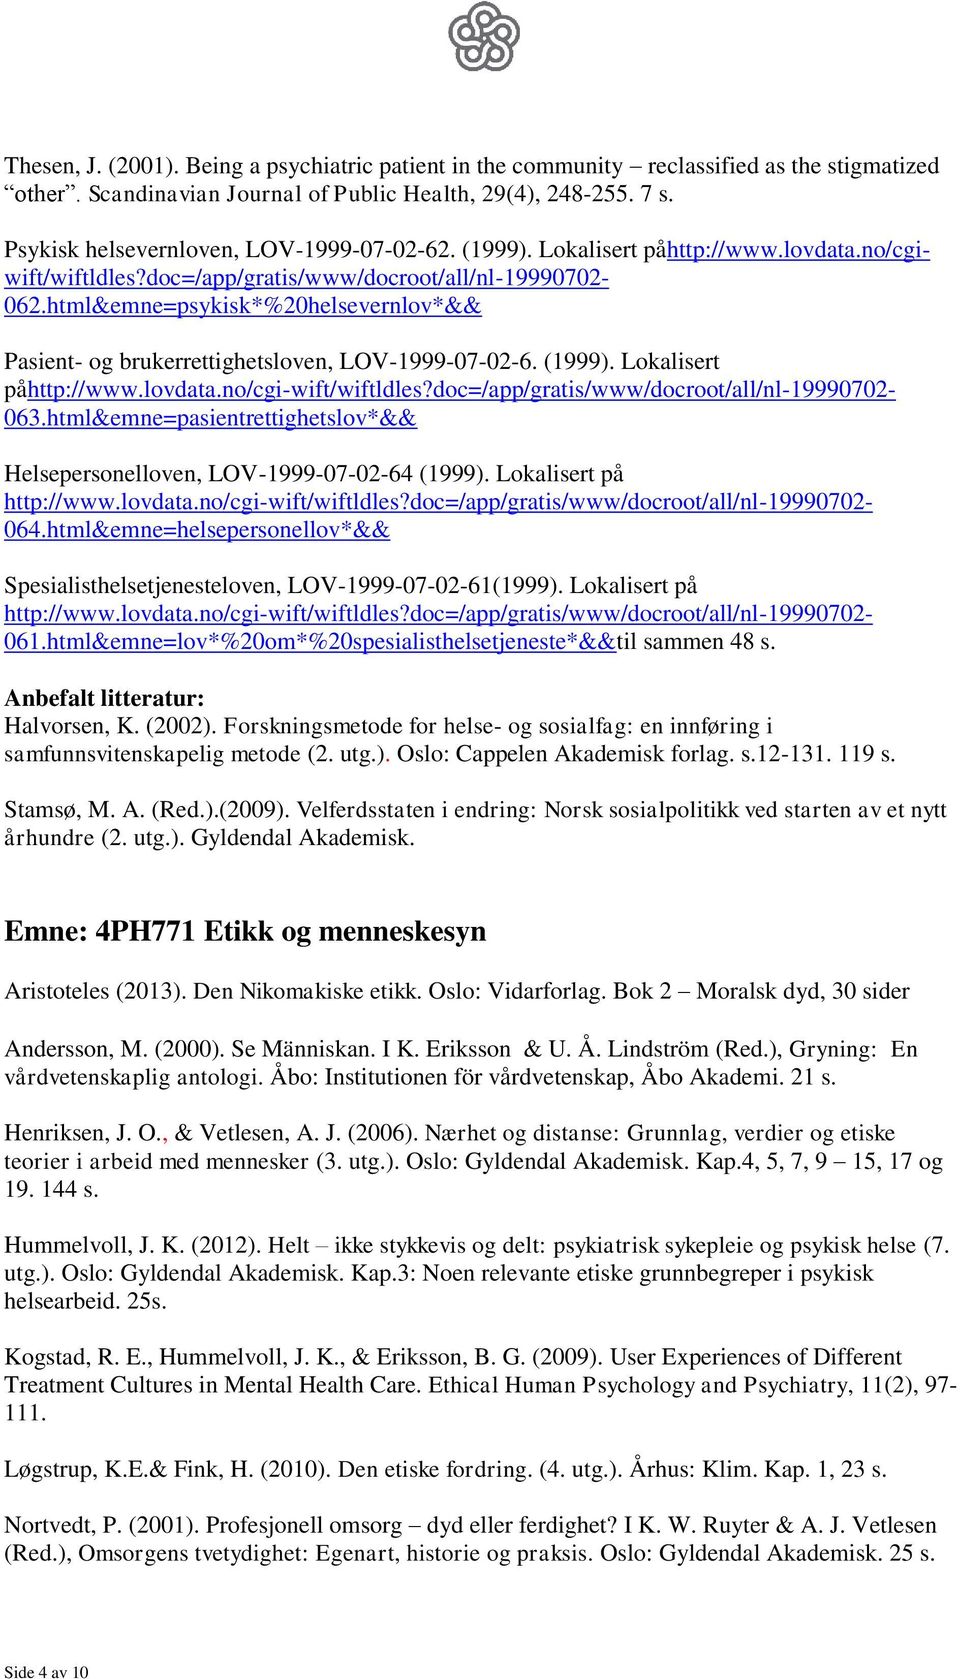 html&emne=psykisk*%20helsevernlov*&& Pasient- og brukerrettighetsloven, LOV-1999-07-02-6. (1999). Lokalisert påhttp://www.lovdata.no/cgi-wift/wiftldles?doc=/app/gratis/www/docroot/all/nl-19990702-063.